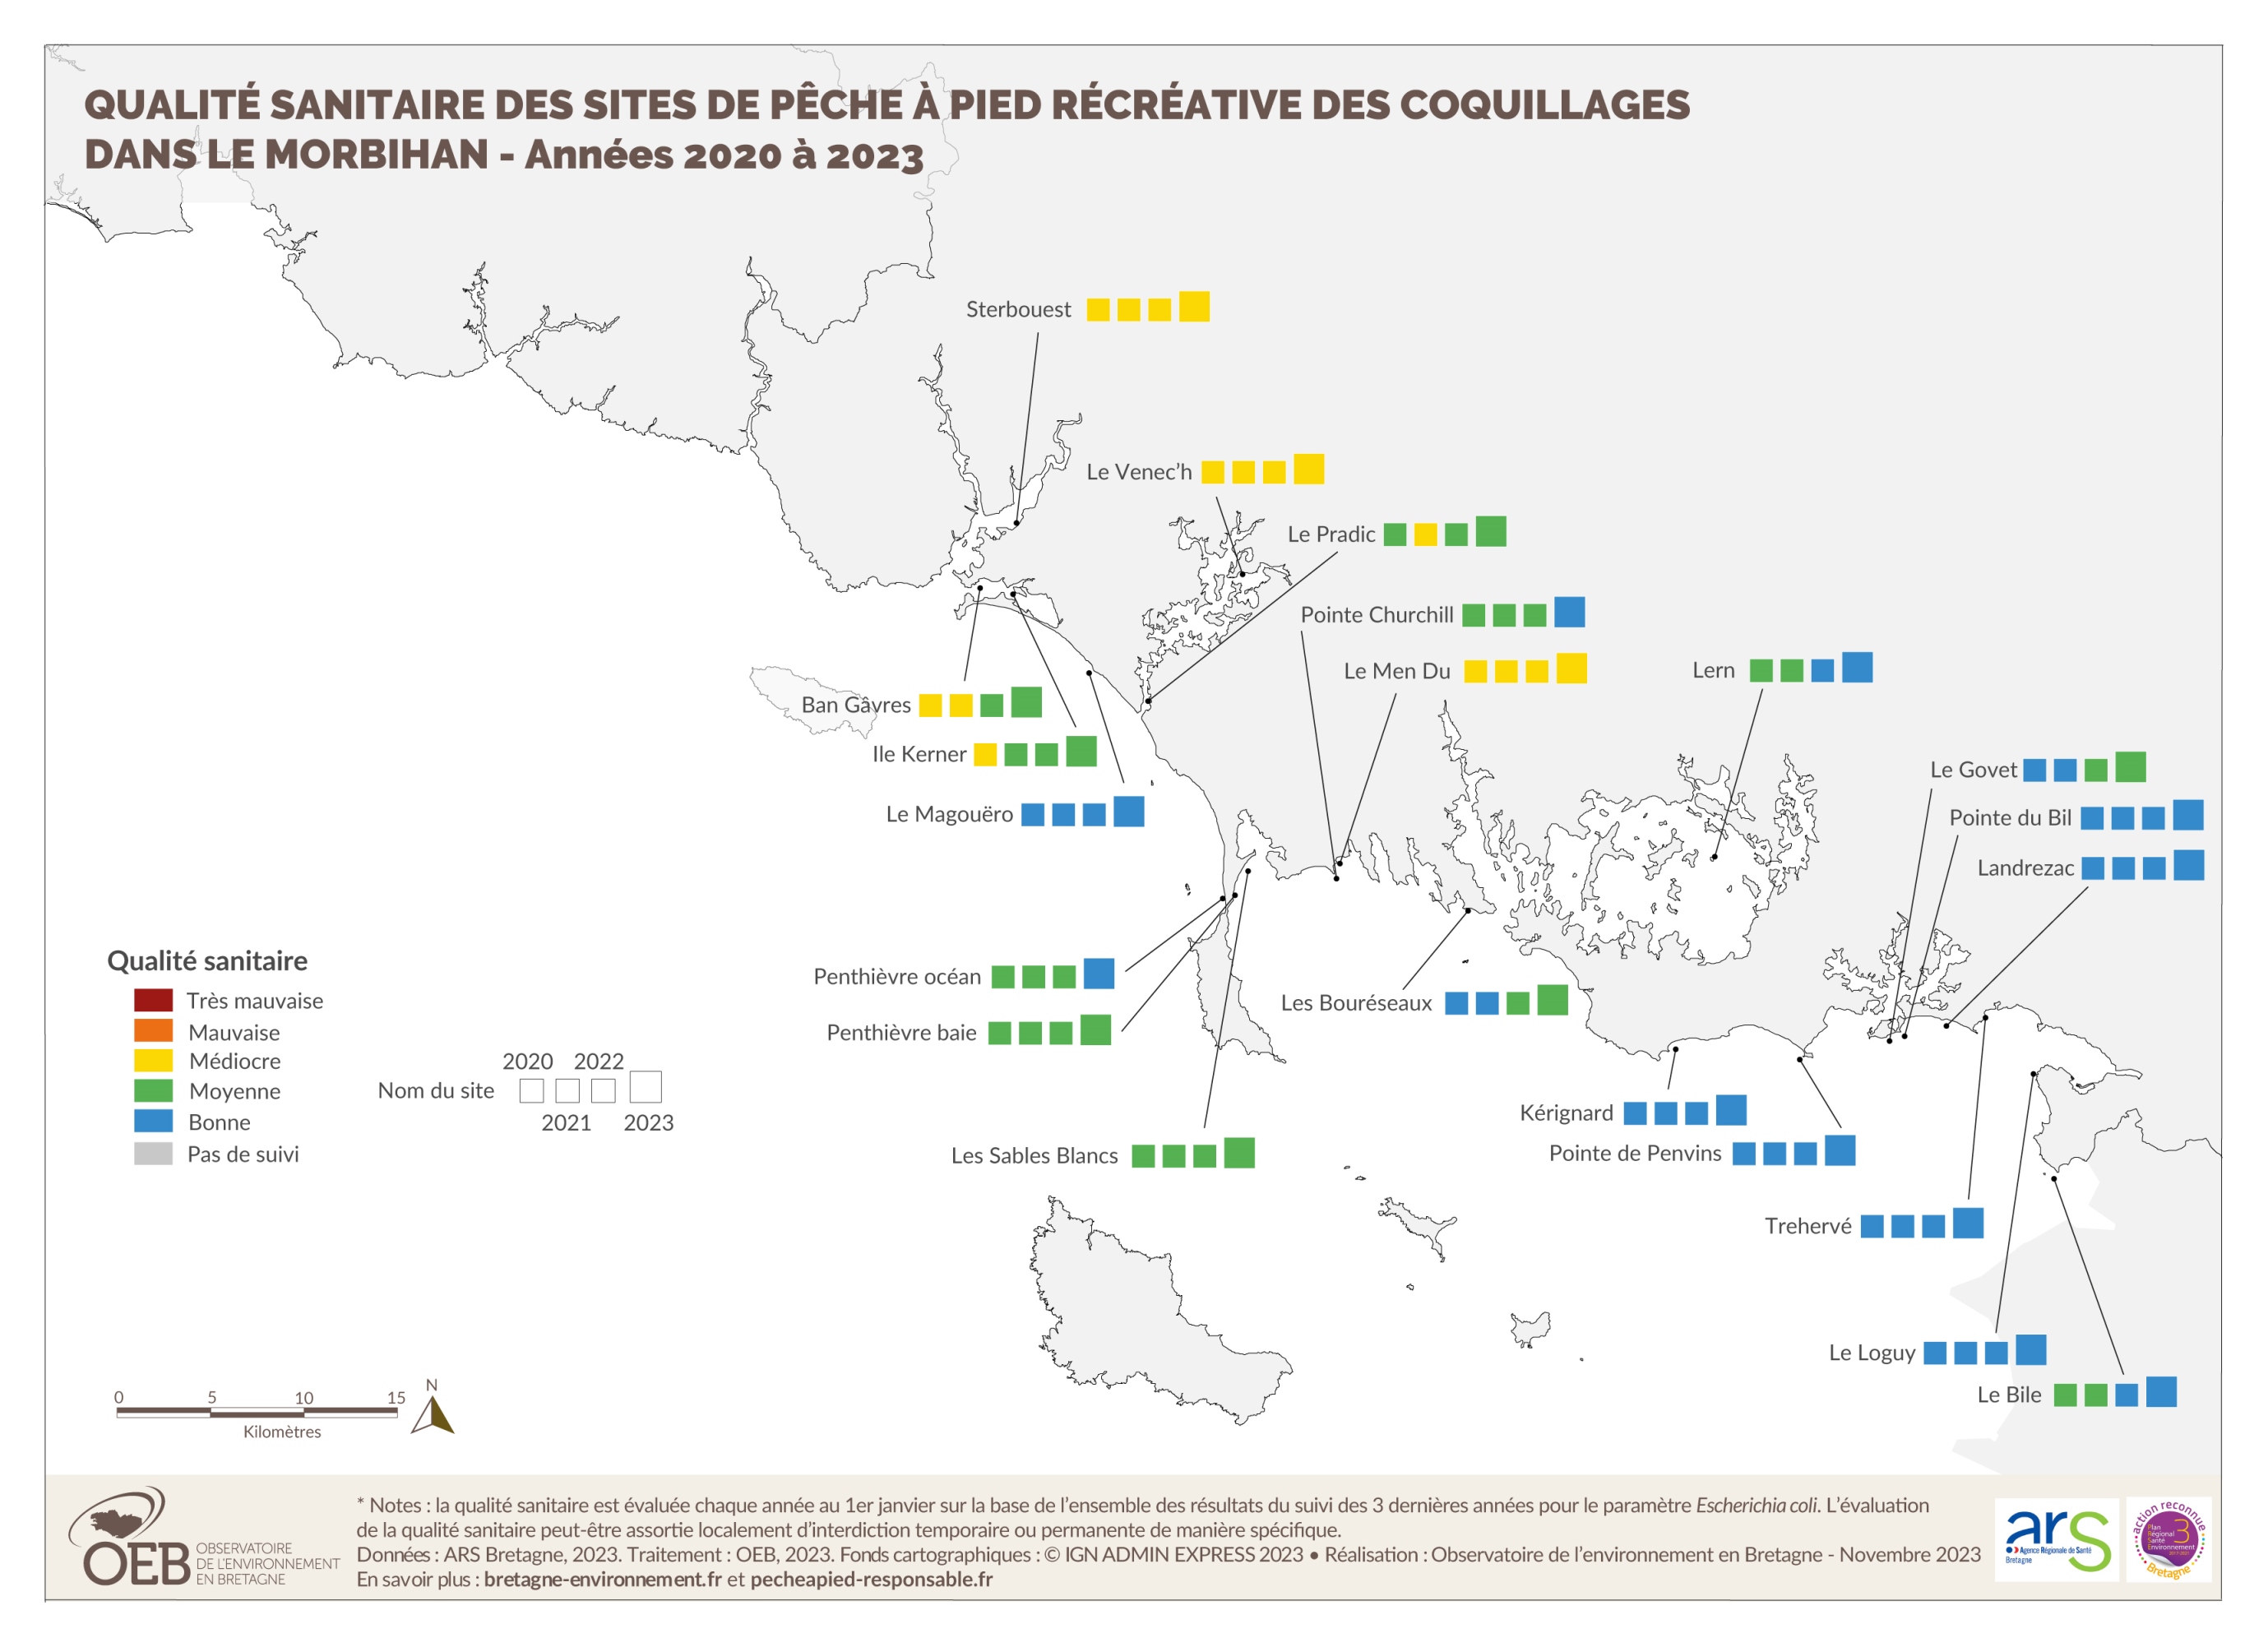 Qualité sanitaire des sites de pêche à pied récréative des coquillages dans le Morbihan - Années 2020 à 2023